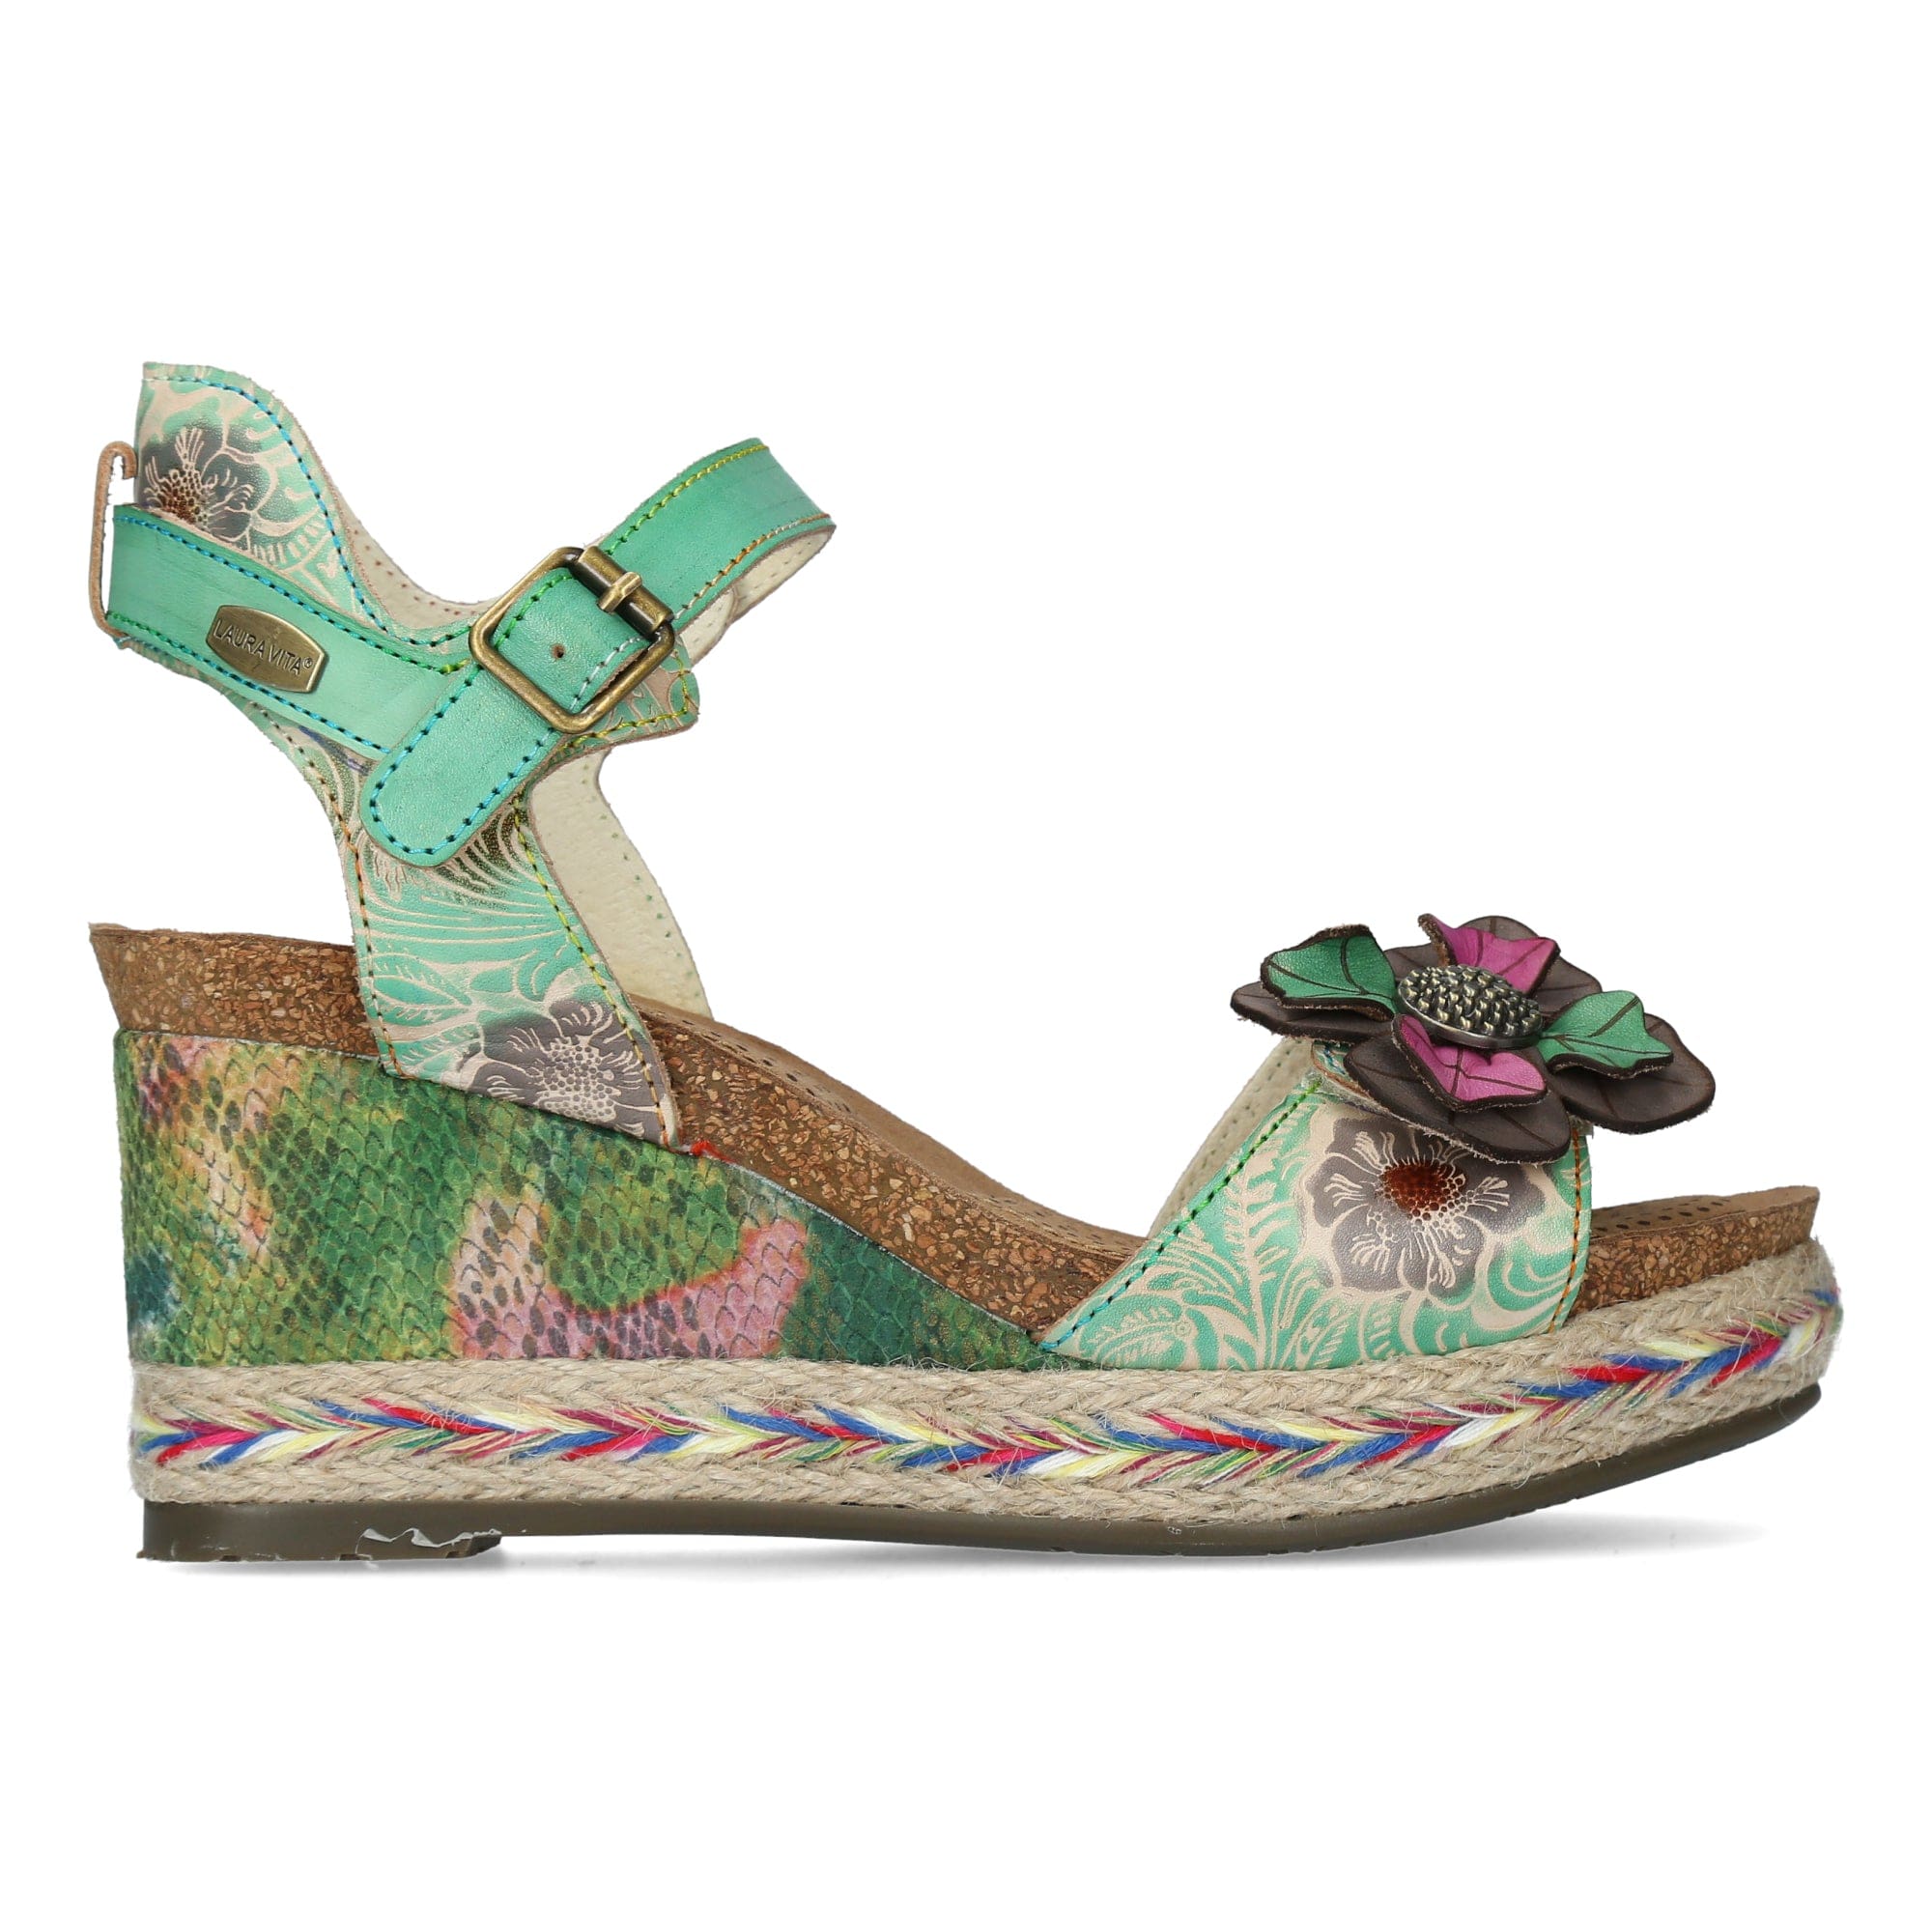 Shoe FACYO 81 - 35 / Green - Sandal